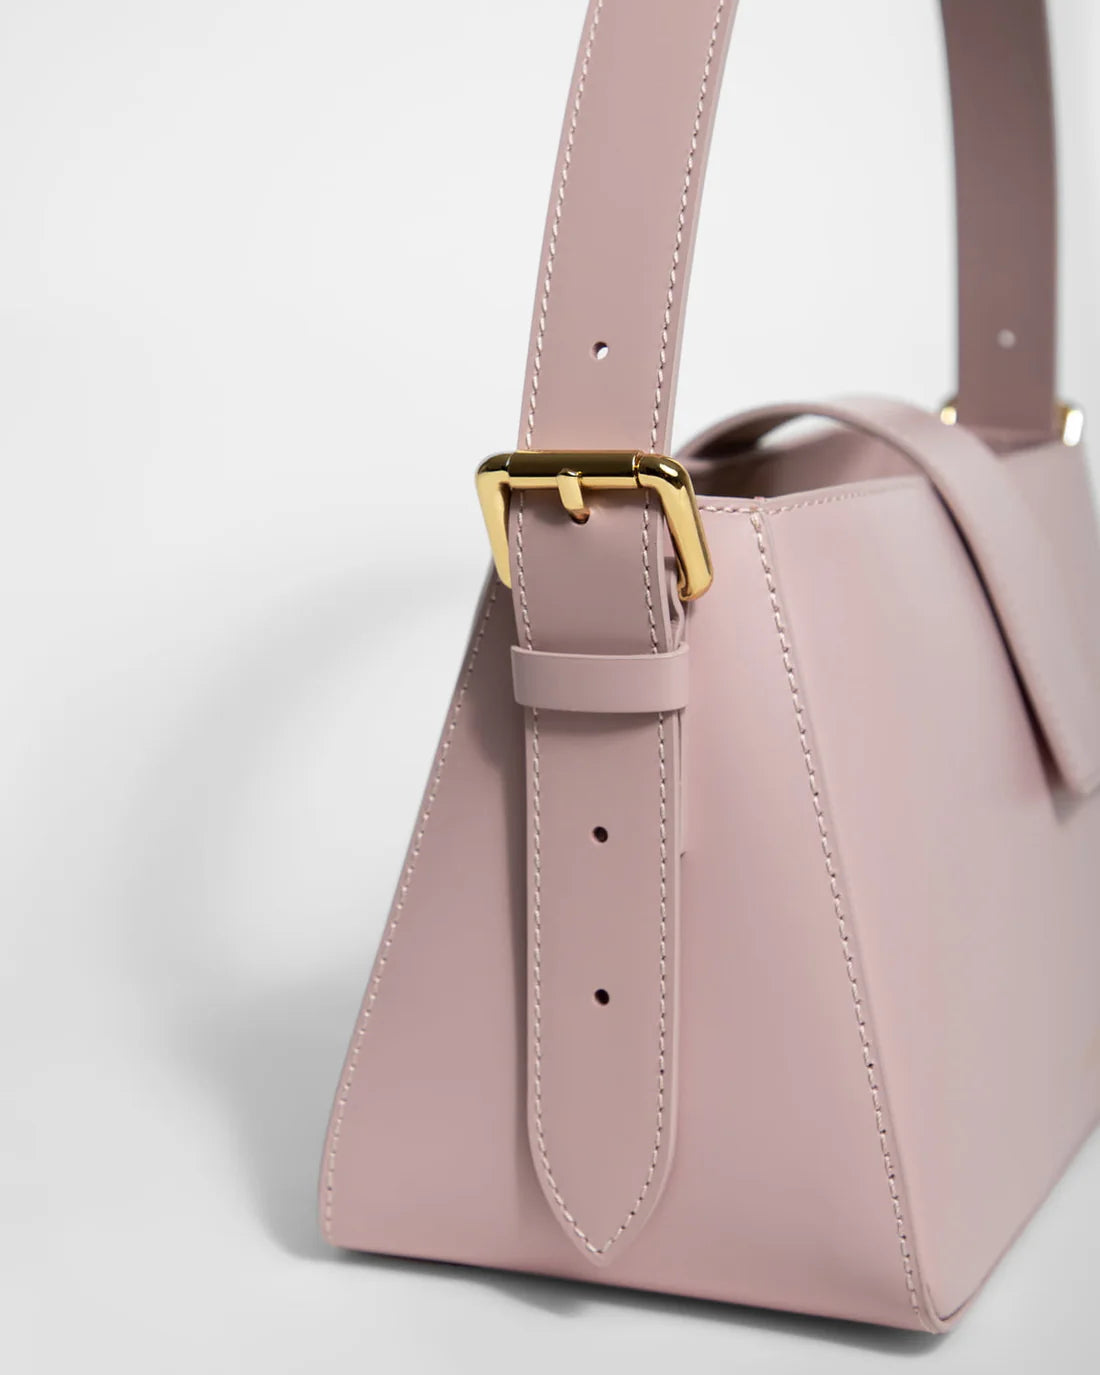 EVÉN Belona hobo bag - light pink strap